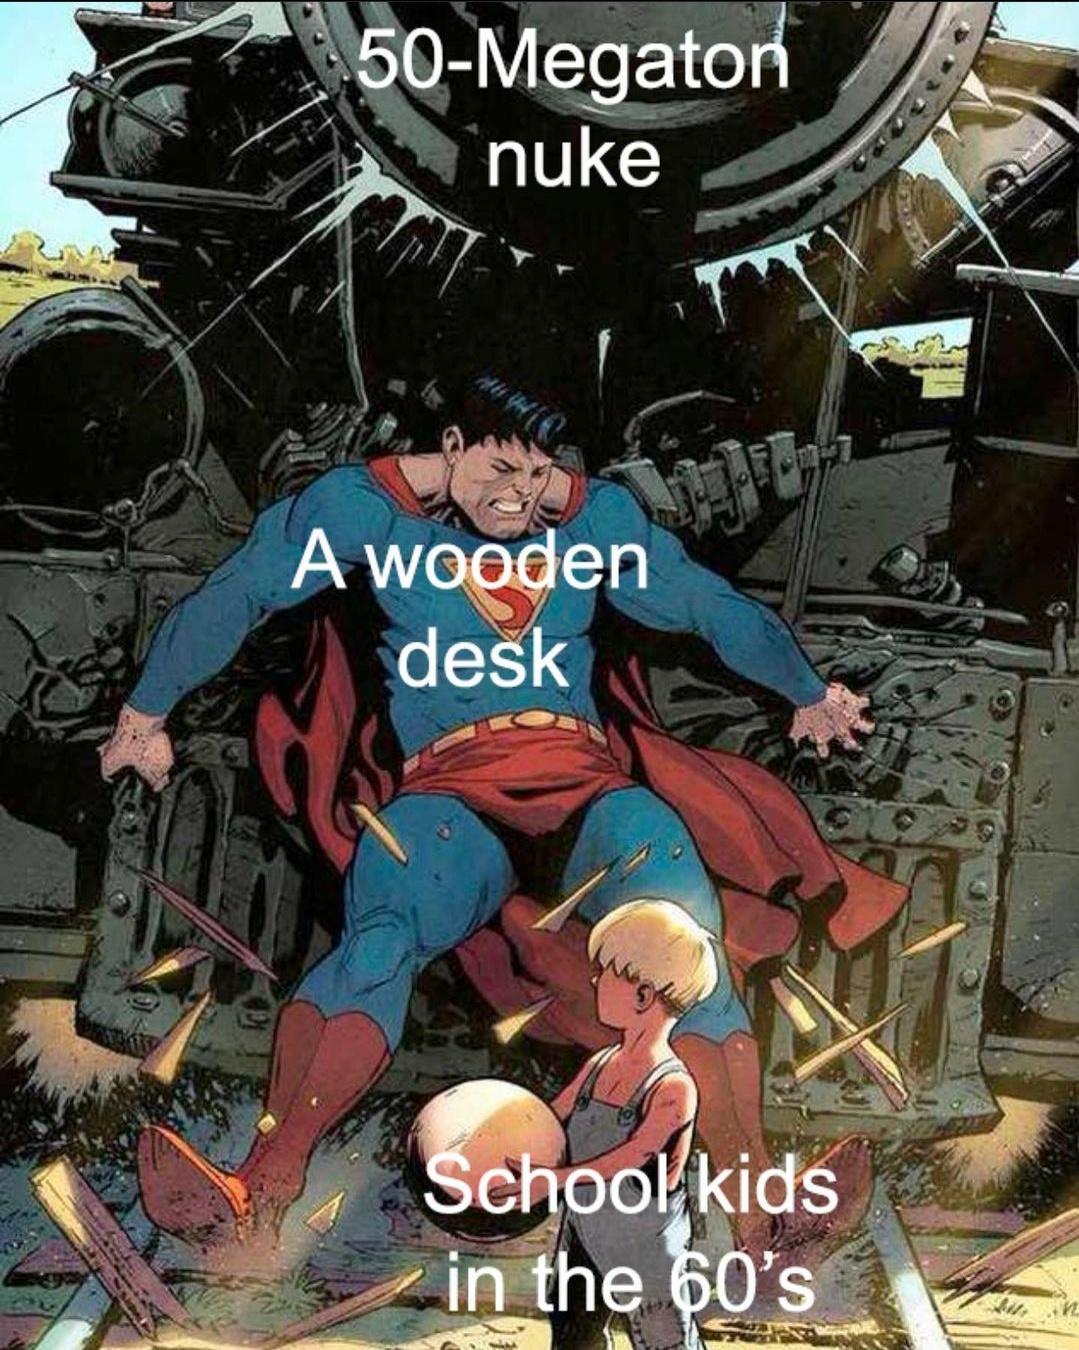 superman train kid - 50Megaton nuke F A wooden desk School kids in the 60's but